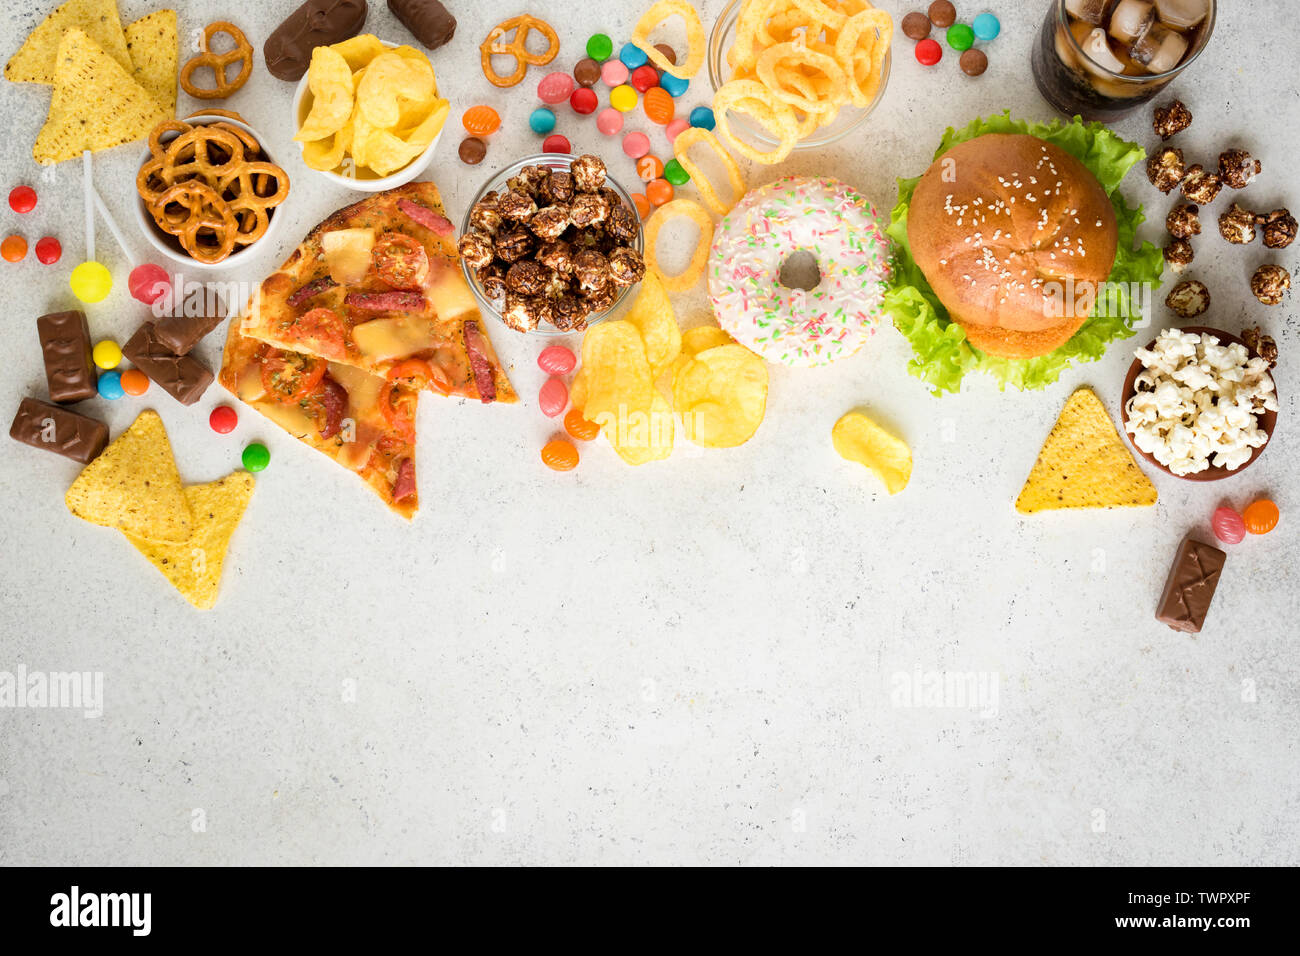 Sortiment an ungesunde Nahrung, Ansicht von oben, kopieren. Ungesunde Ernährung, Junk food Konzept. Stockfoto